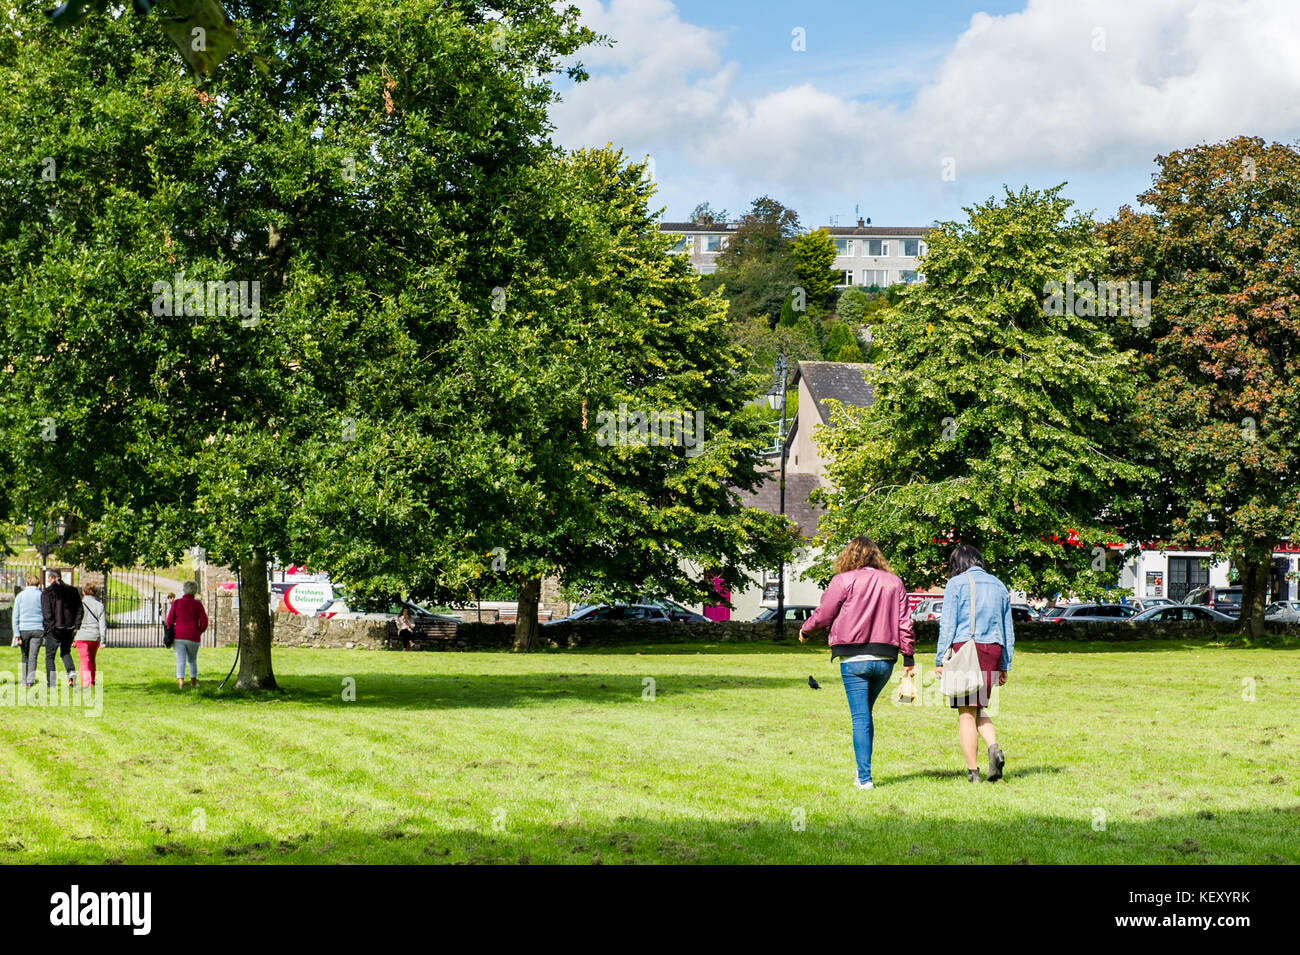 El Blarney cuadrado en un día soleado con gente caminando, hierba, árboles y copie el espacio. Blarney, Condado de Cork, Irlanda. Foto de stock